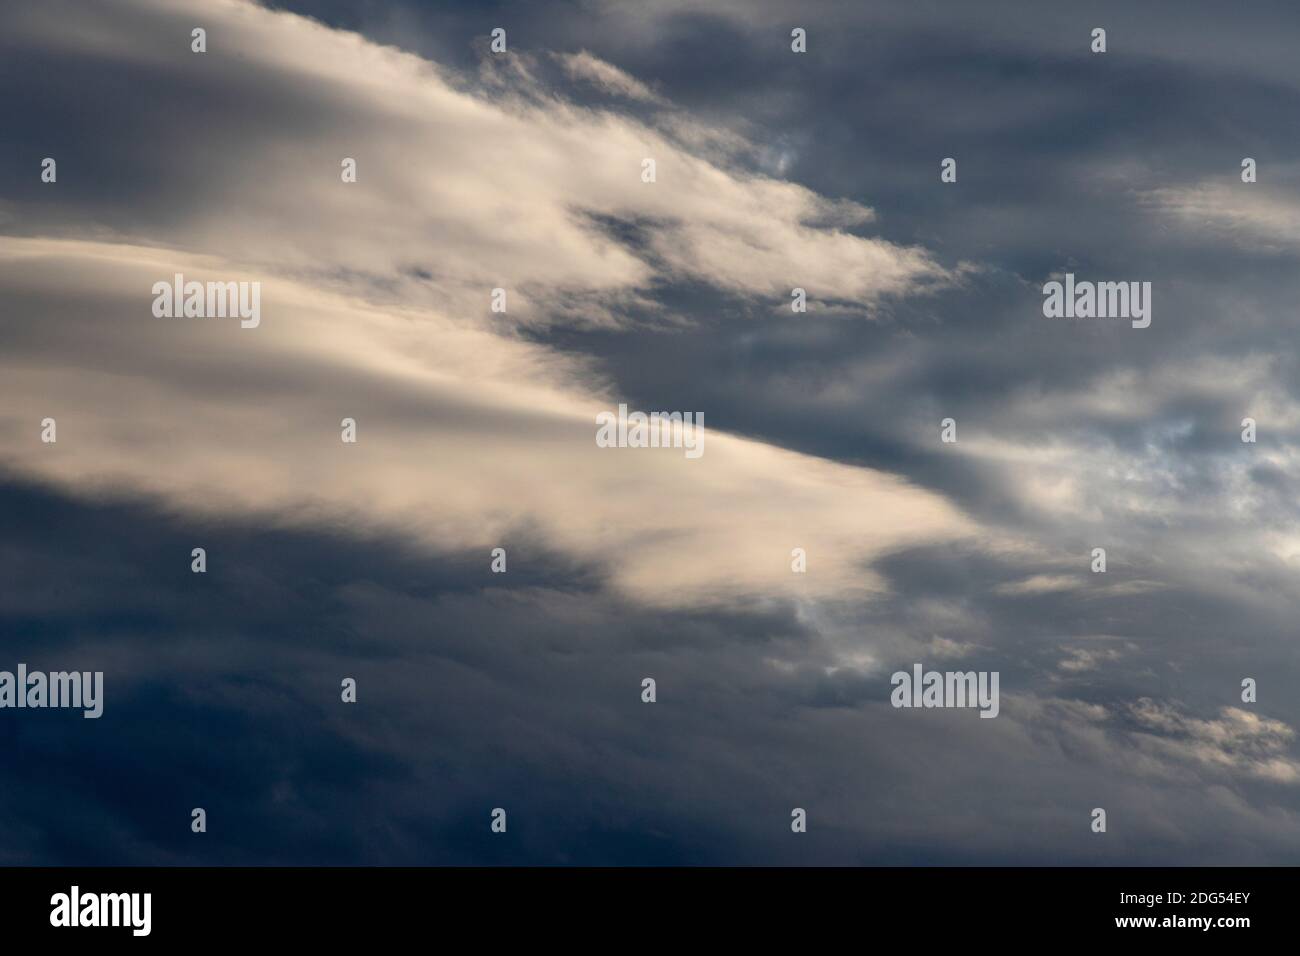 Während sich ein Sturm aufbaut, werden geschichtete stratus-Wolken von einer untergehenden Novembersonne beleuchtet Stockfoto